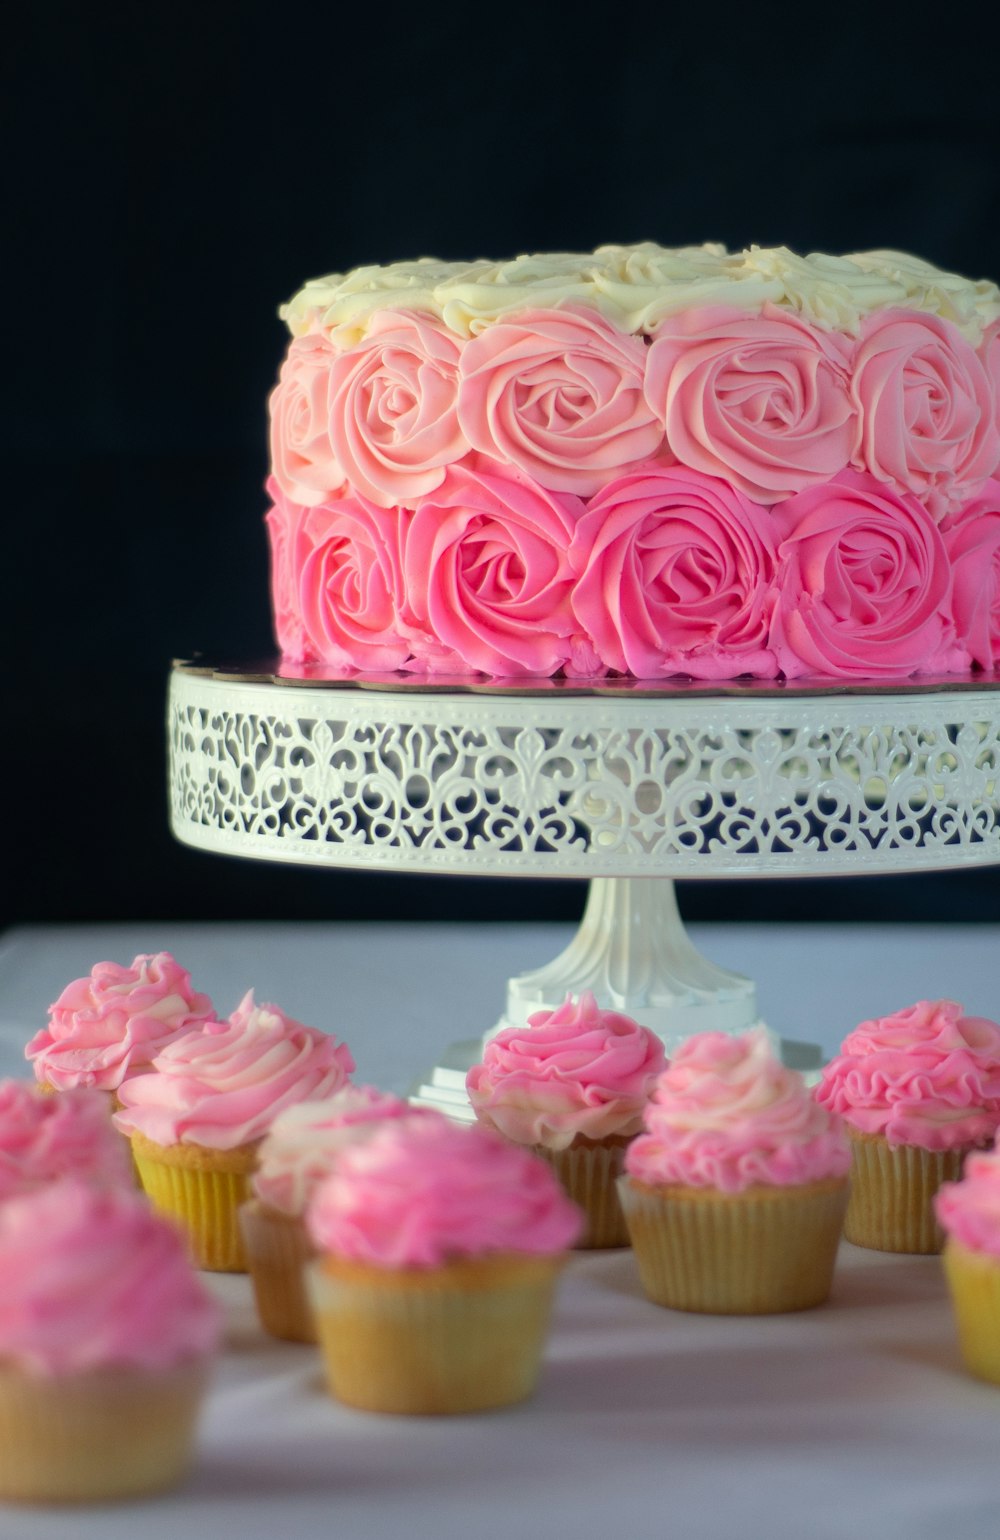 분홍색과 흰색 꽃 케이크 사진 – Unsplash의 무료 케이크 이미지